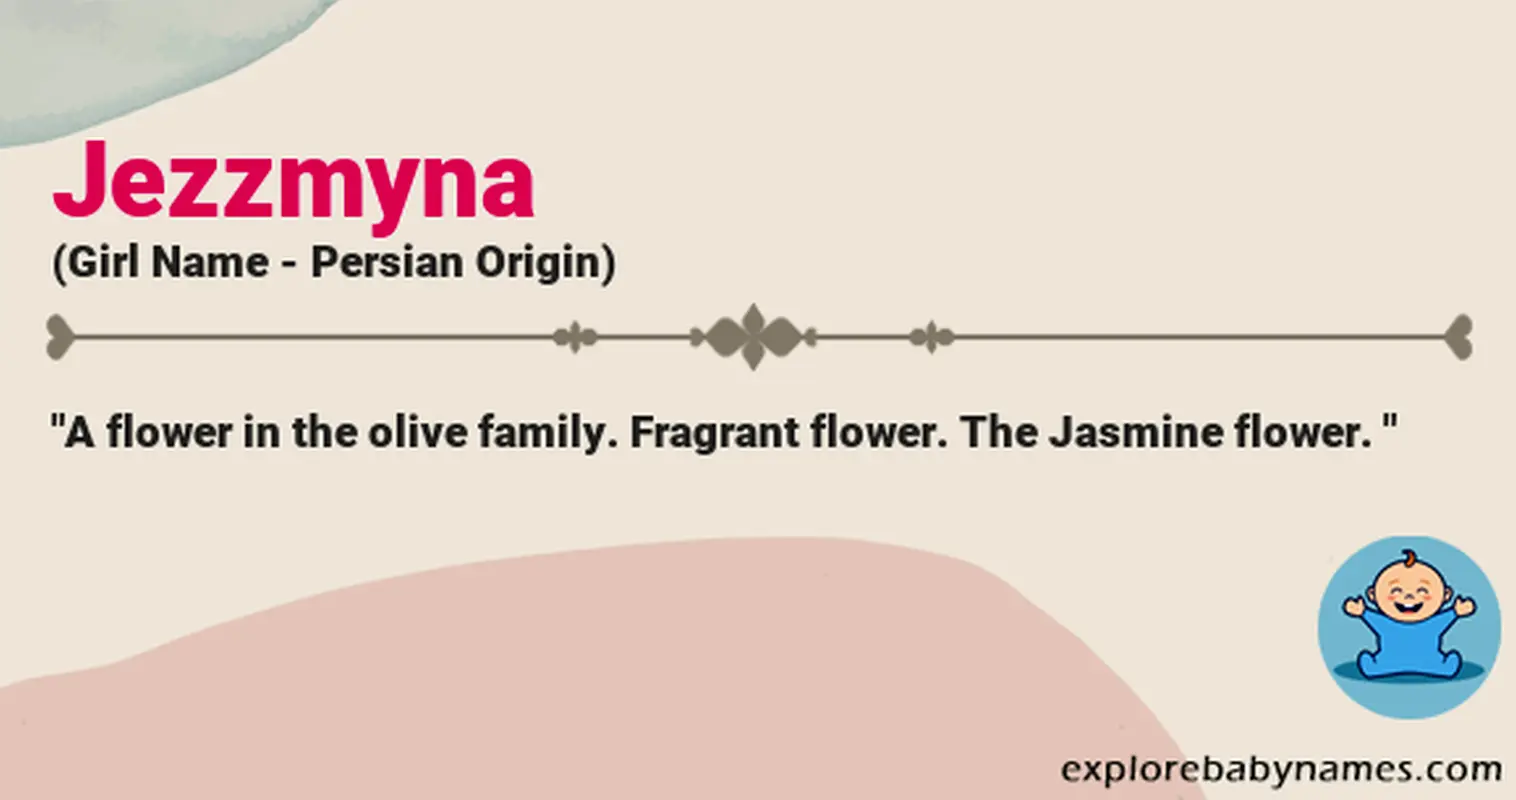 Meaning of Jezzmyna